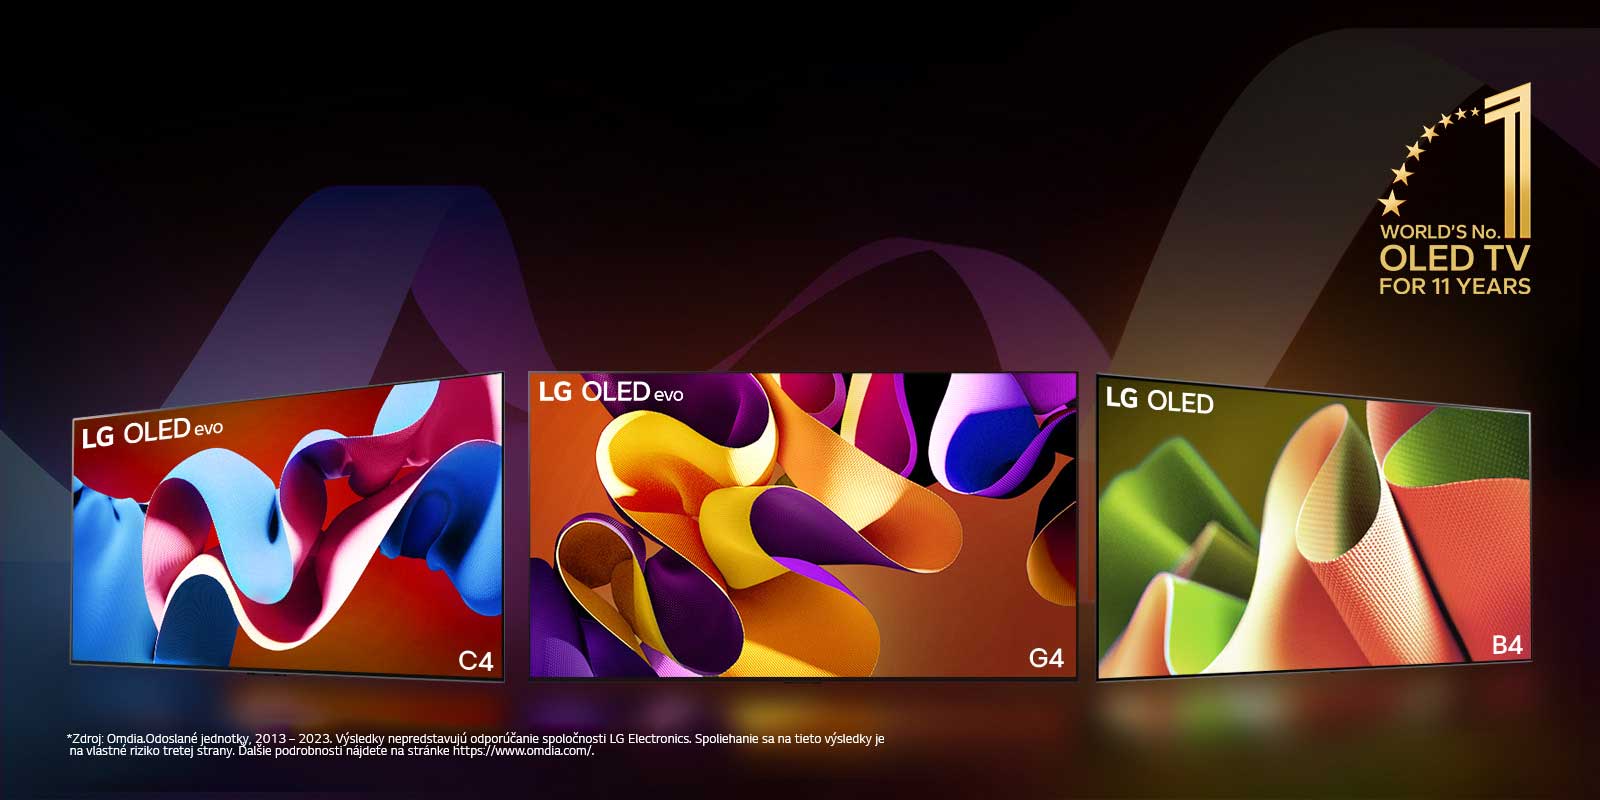 LG OLED evo TV C4, evo G4, a B4 stoja v rade na čiernom pozadí s jemnými farebnými vírmi. Na obrázku je emblém „Svetová jednotka medzi televízormi OLED TV už 11 rokov“.  Zobrazuje sa vyhlásenie: „Zdroj: Omdia.Odoslané jednotky, 2013 až 2023. Výsledky nepredstavujú odporúčanie spoločnosti LG Electronics. Spoliehanie sa na tieto výsledky je na vlastné riziko tretej strany. Ďalšie podrobnosti nájdete na stránke https://www.omdia.com/.“